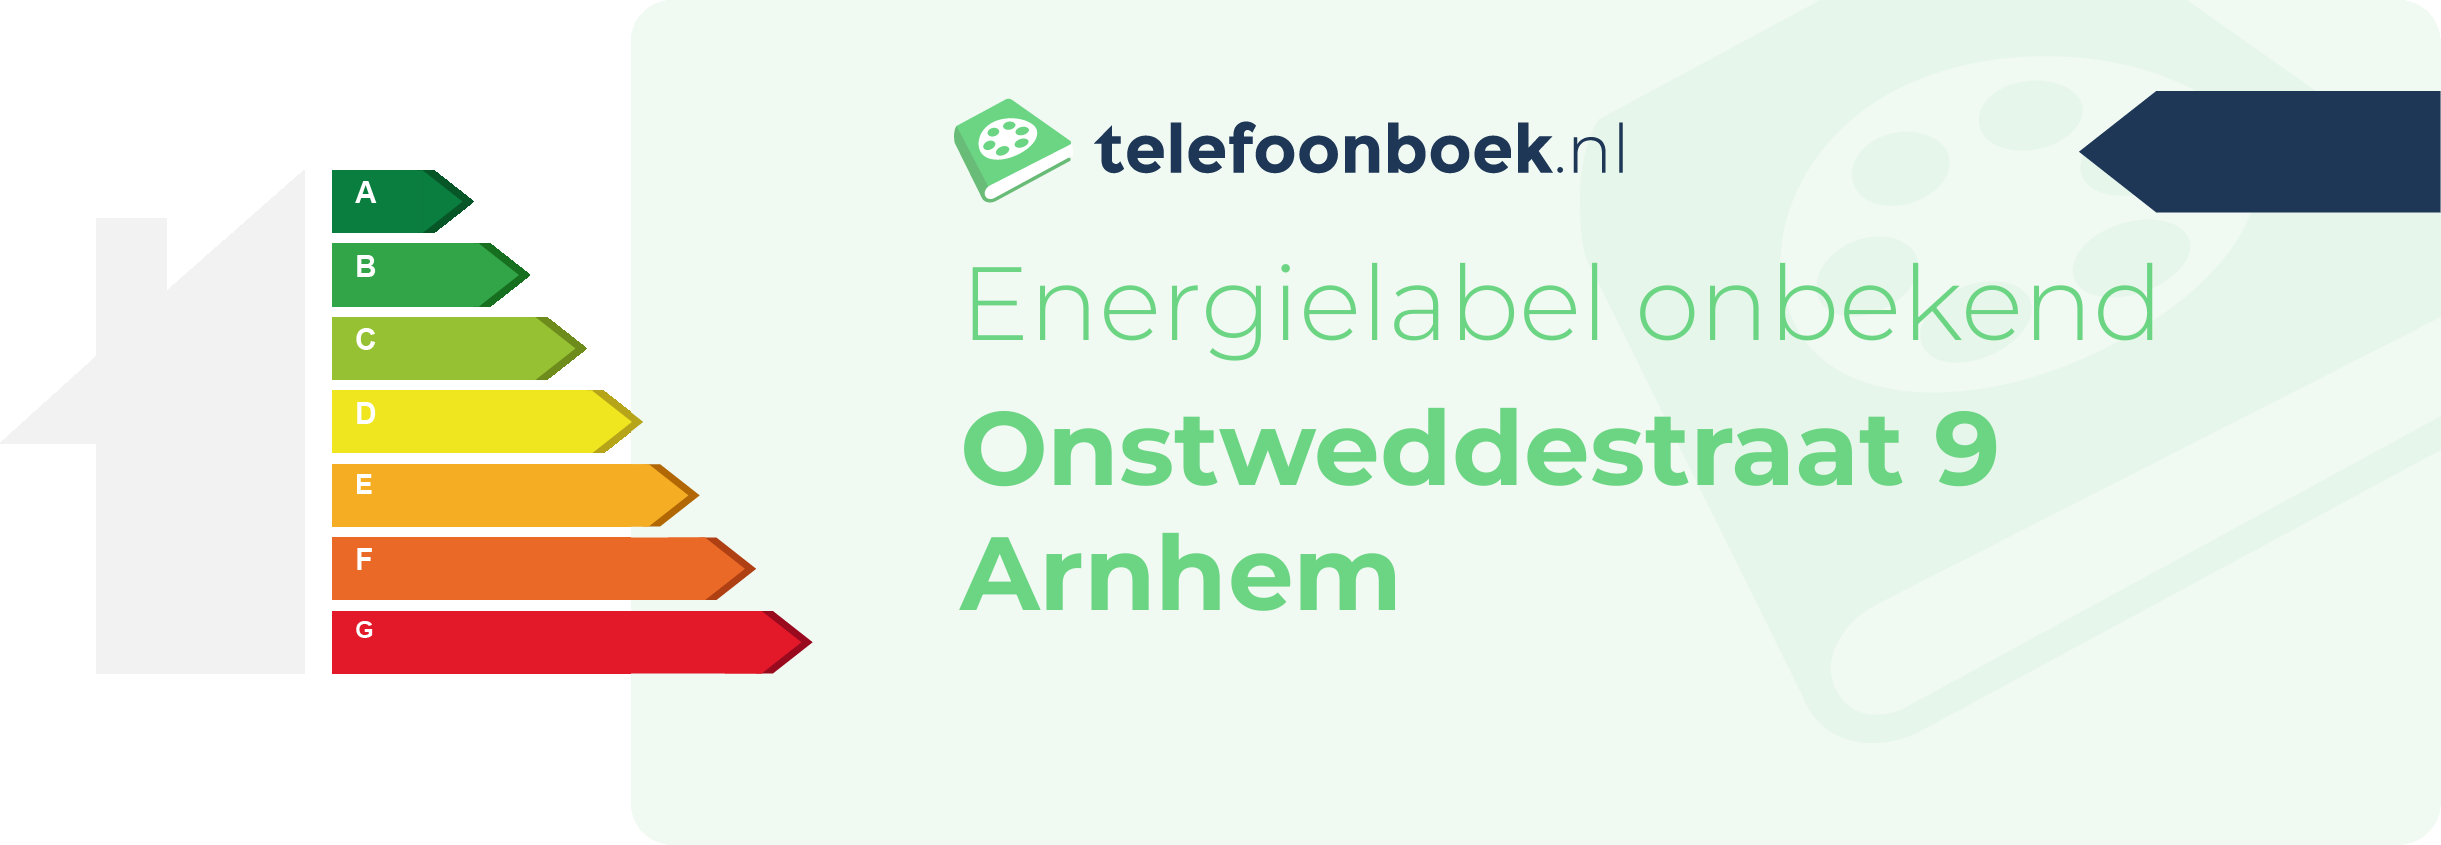 Energielabel Onstweddestraat 9 Arnhem